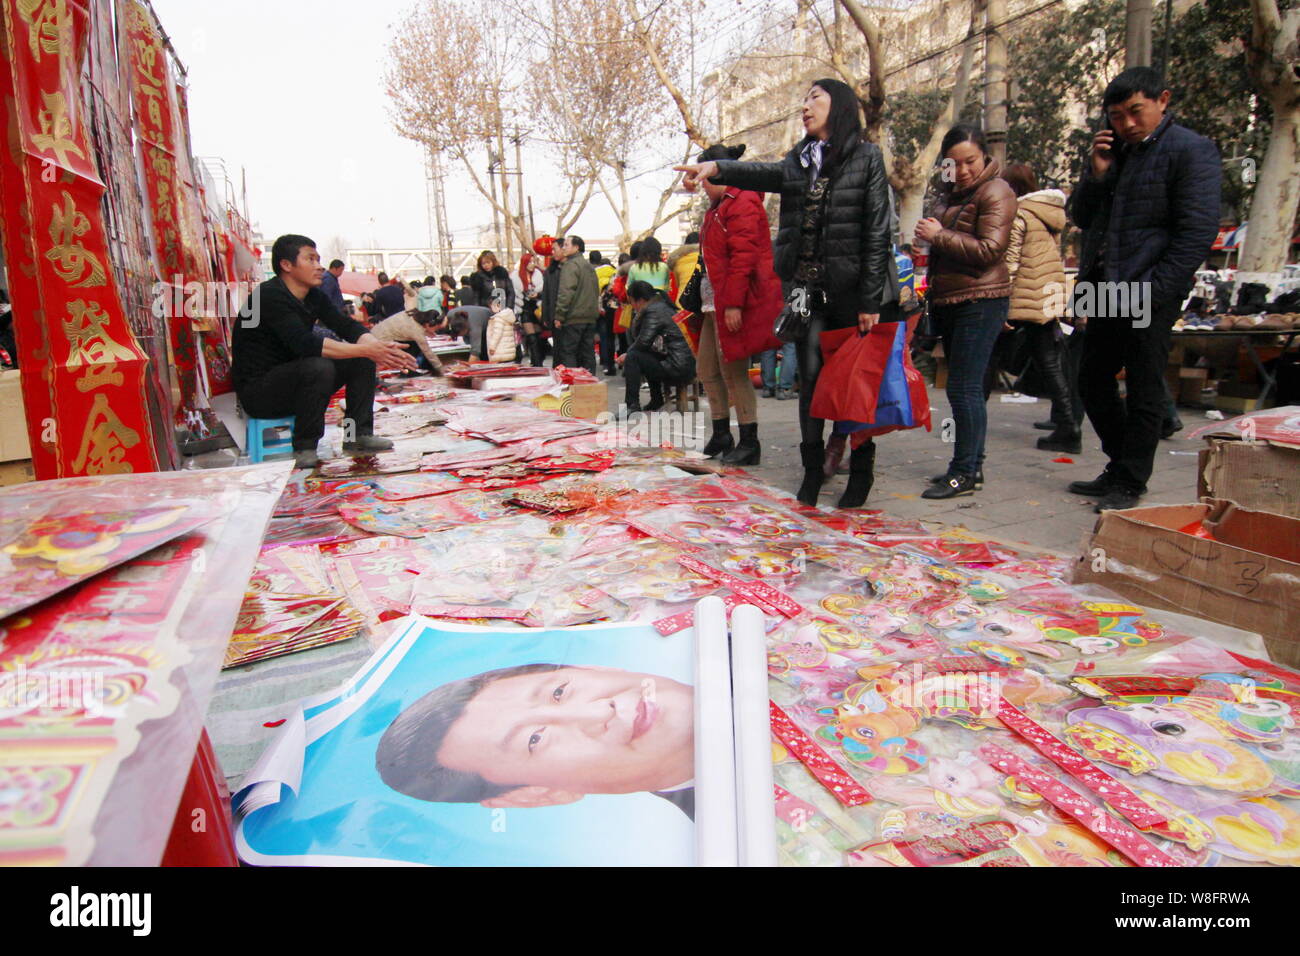 Locali residenti cinesi comprare le decalcomanie rosse e le immagini del Presidente cinese Xi Jinping per la festa di primavera per festeggiare il nuovo anno lunare cinese a roa Foto Stock